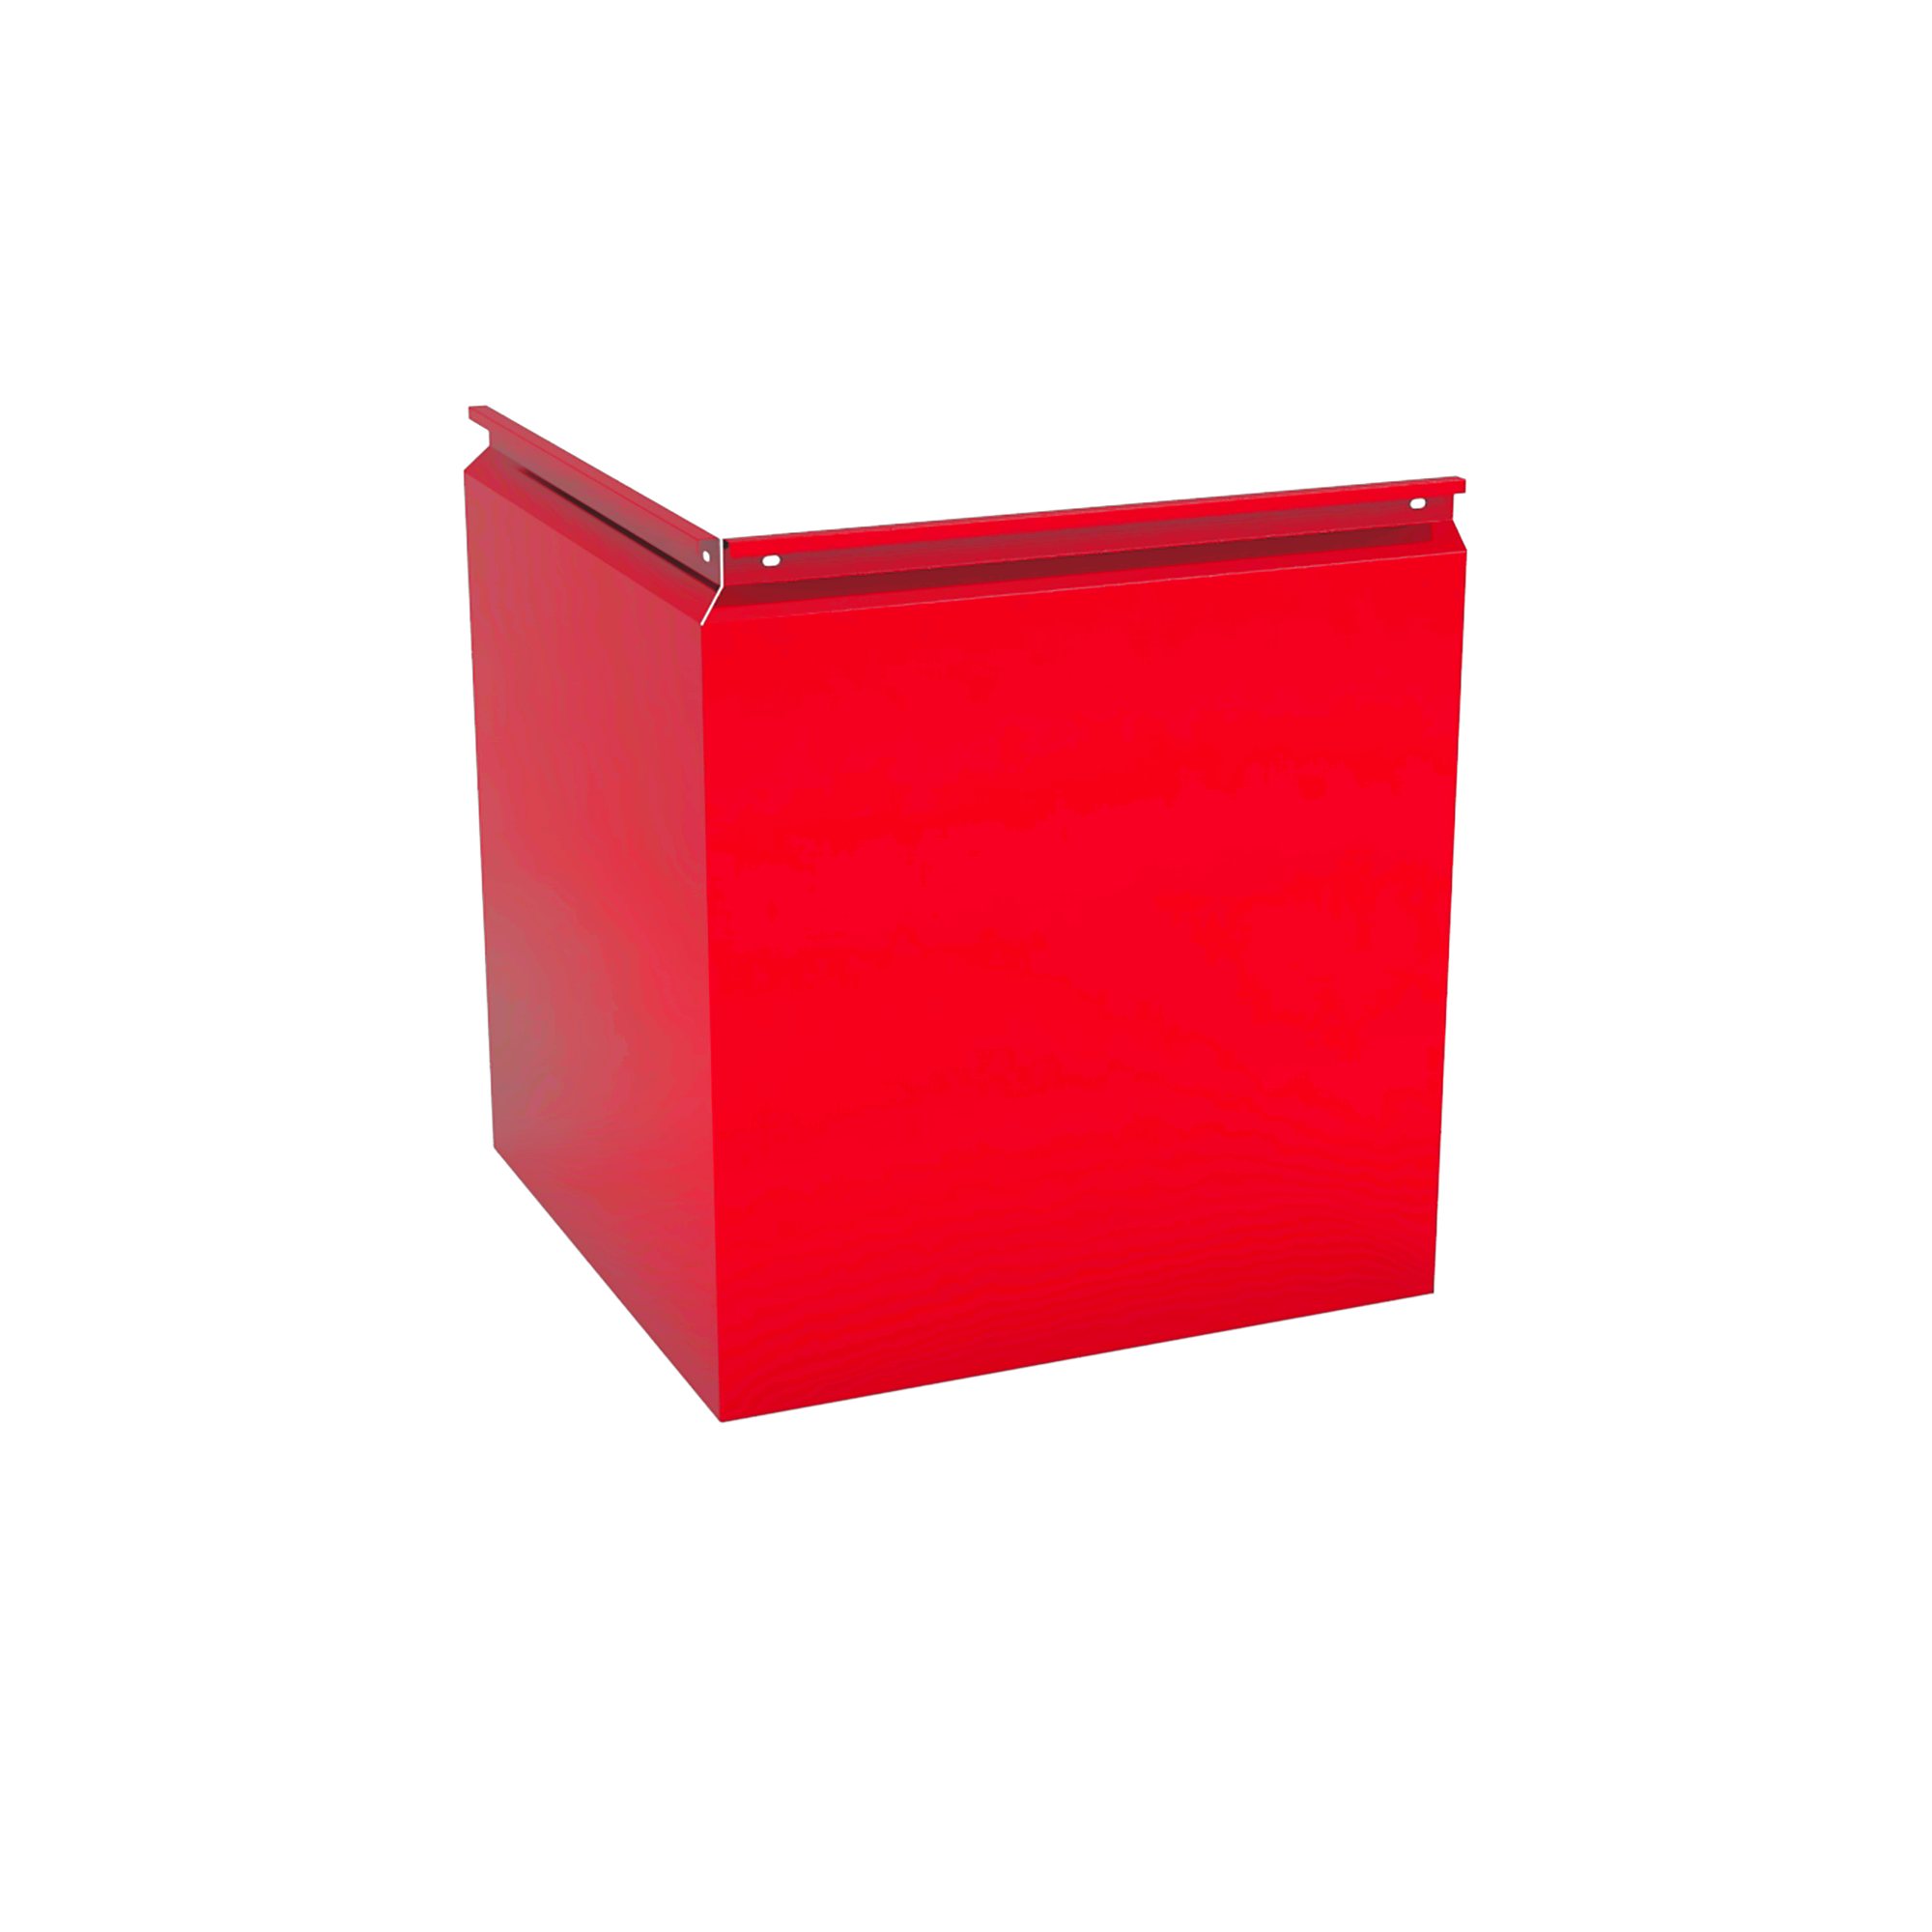 Фасадная кассета Угловая 1025 Транспортный красный 0,9 мм Фасадные кассеты Кровля Сервис